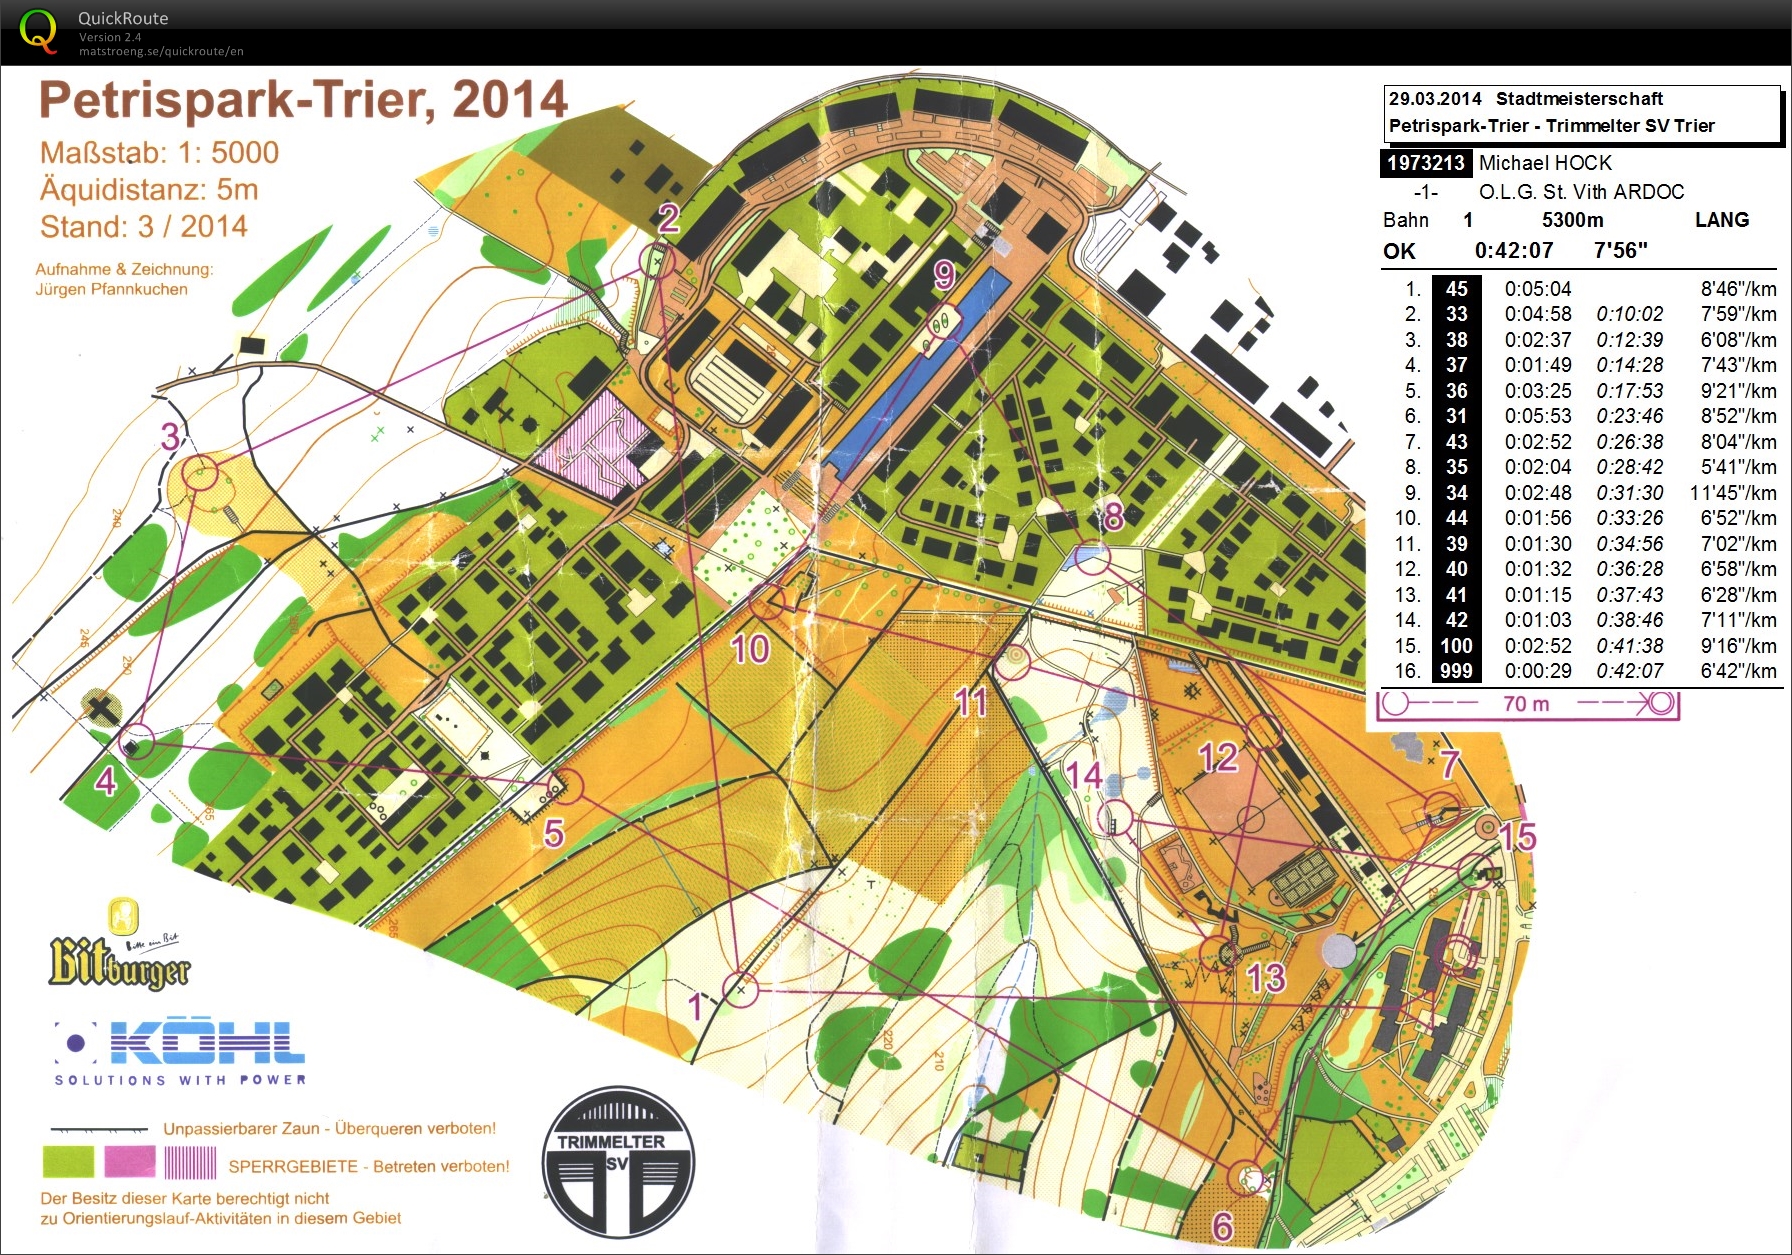 22. Offene und internationale Stadtmeisterschaft Trier (29-03-2014)